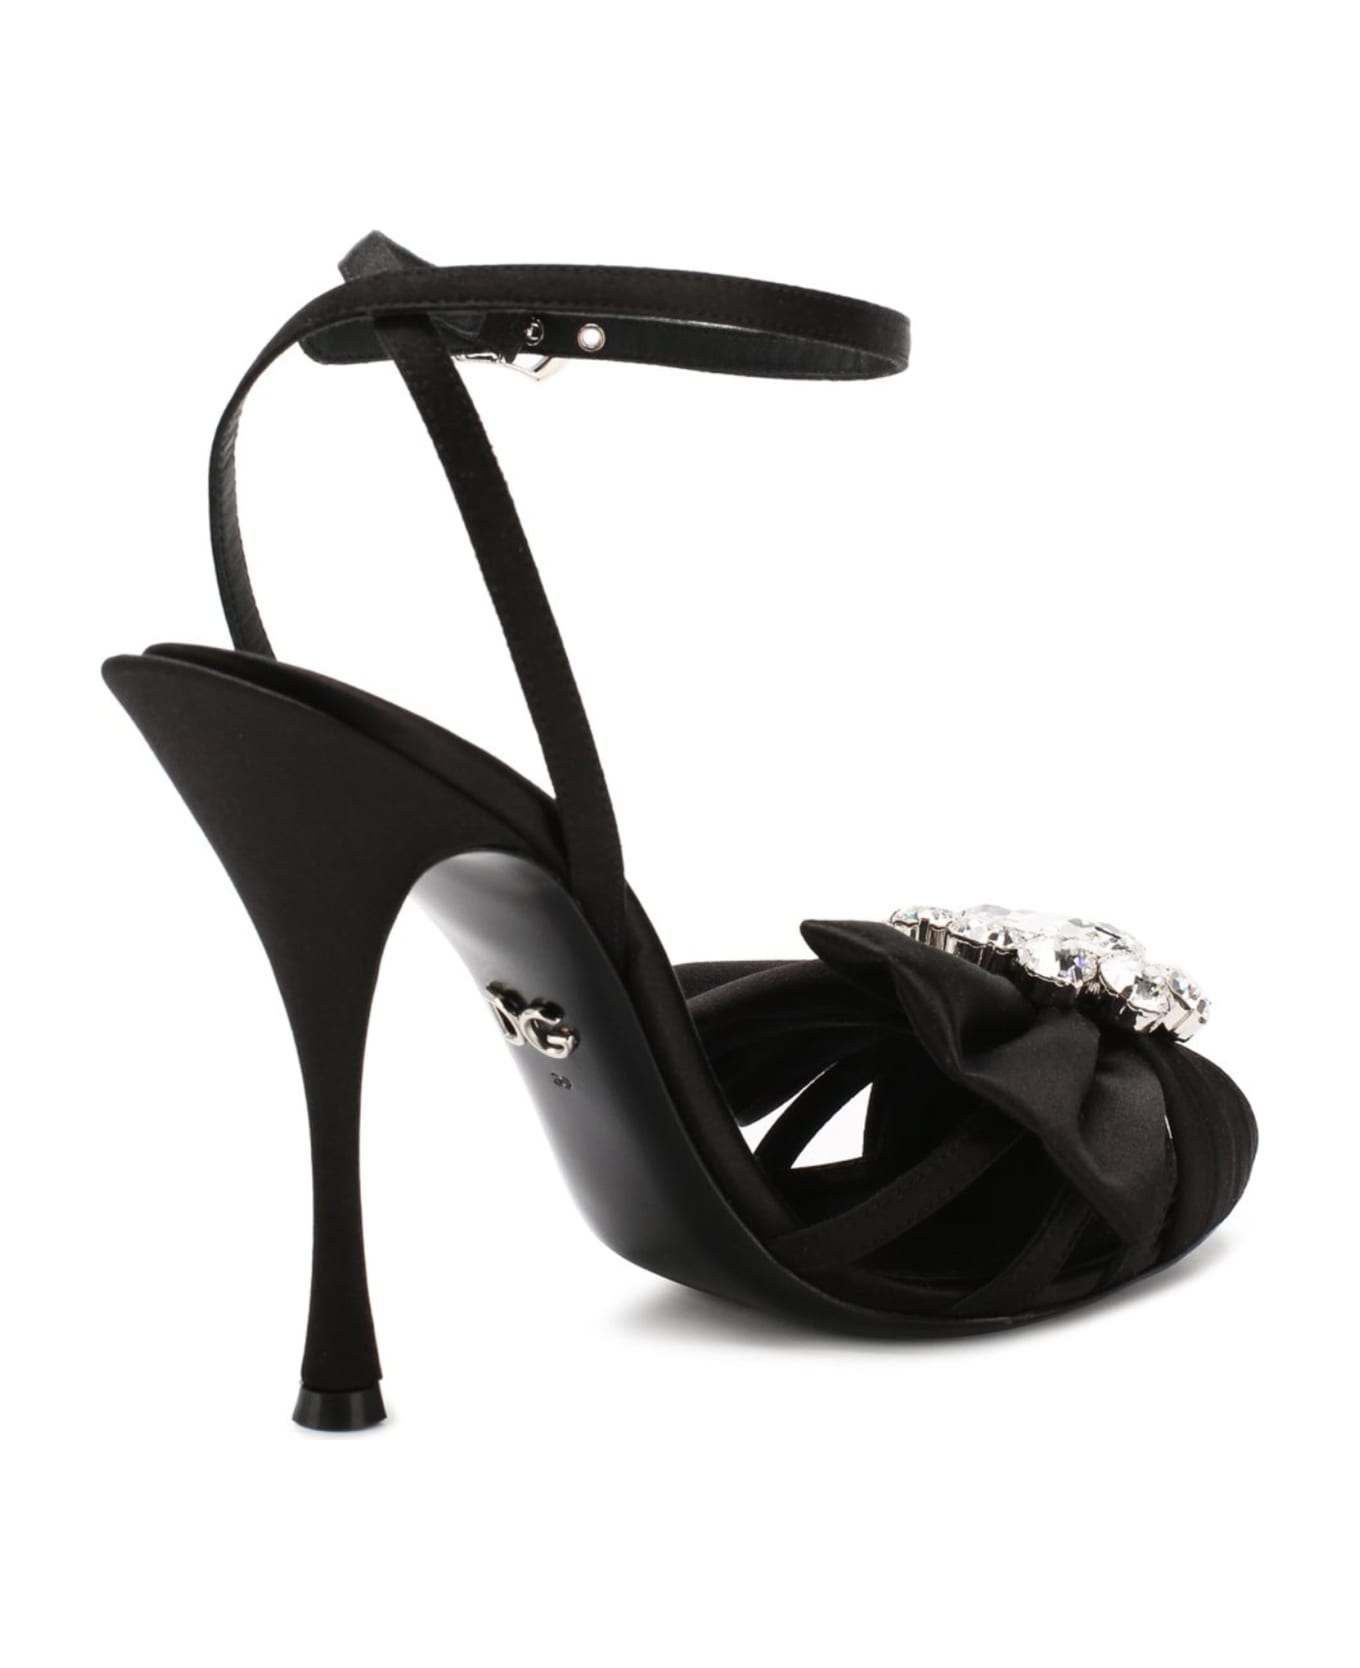 Dolce & Gabbana Bette Crystal Sandals - Black